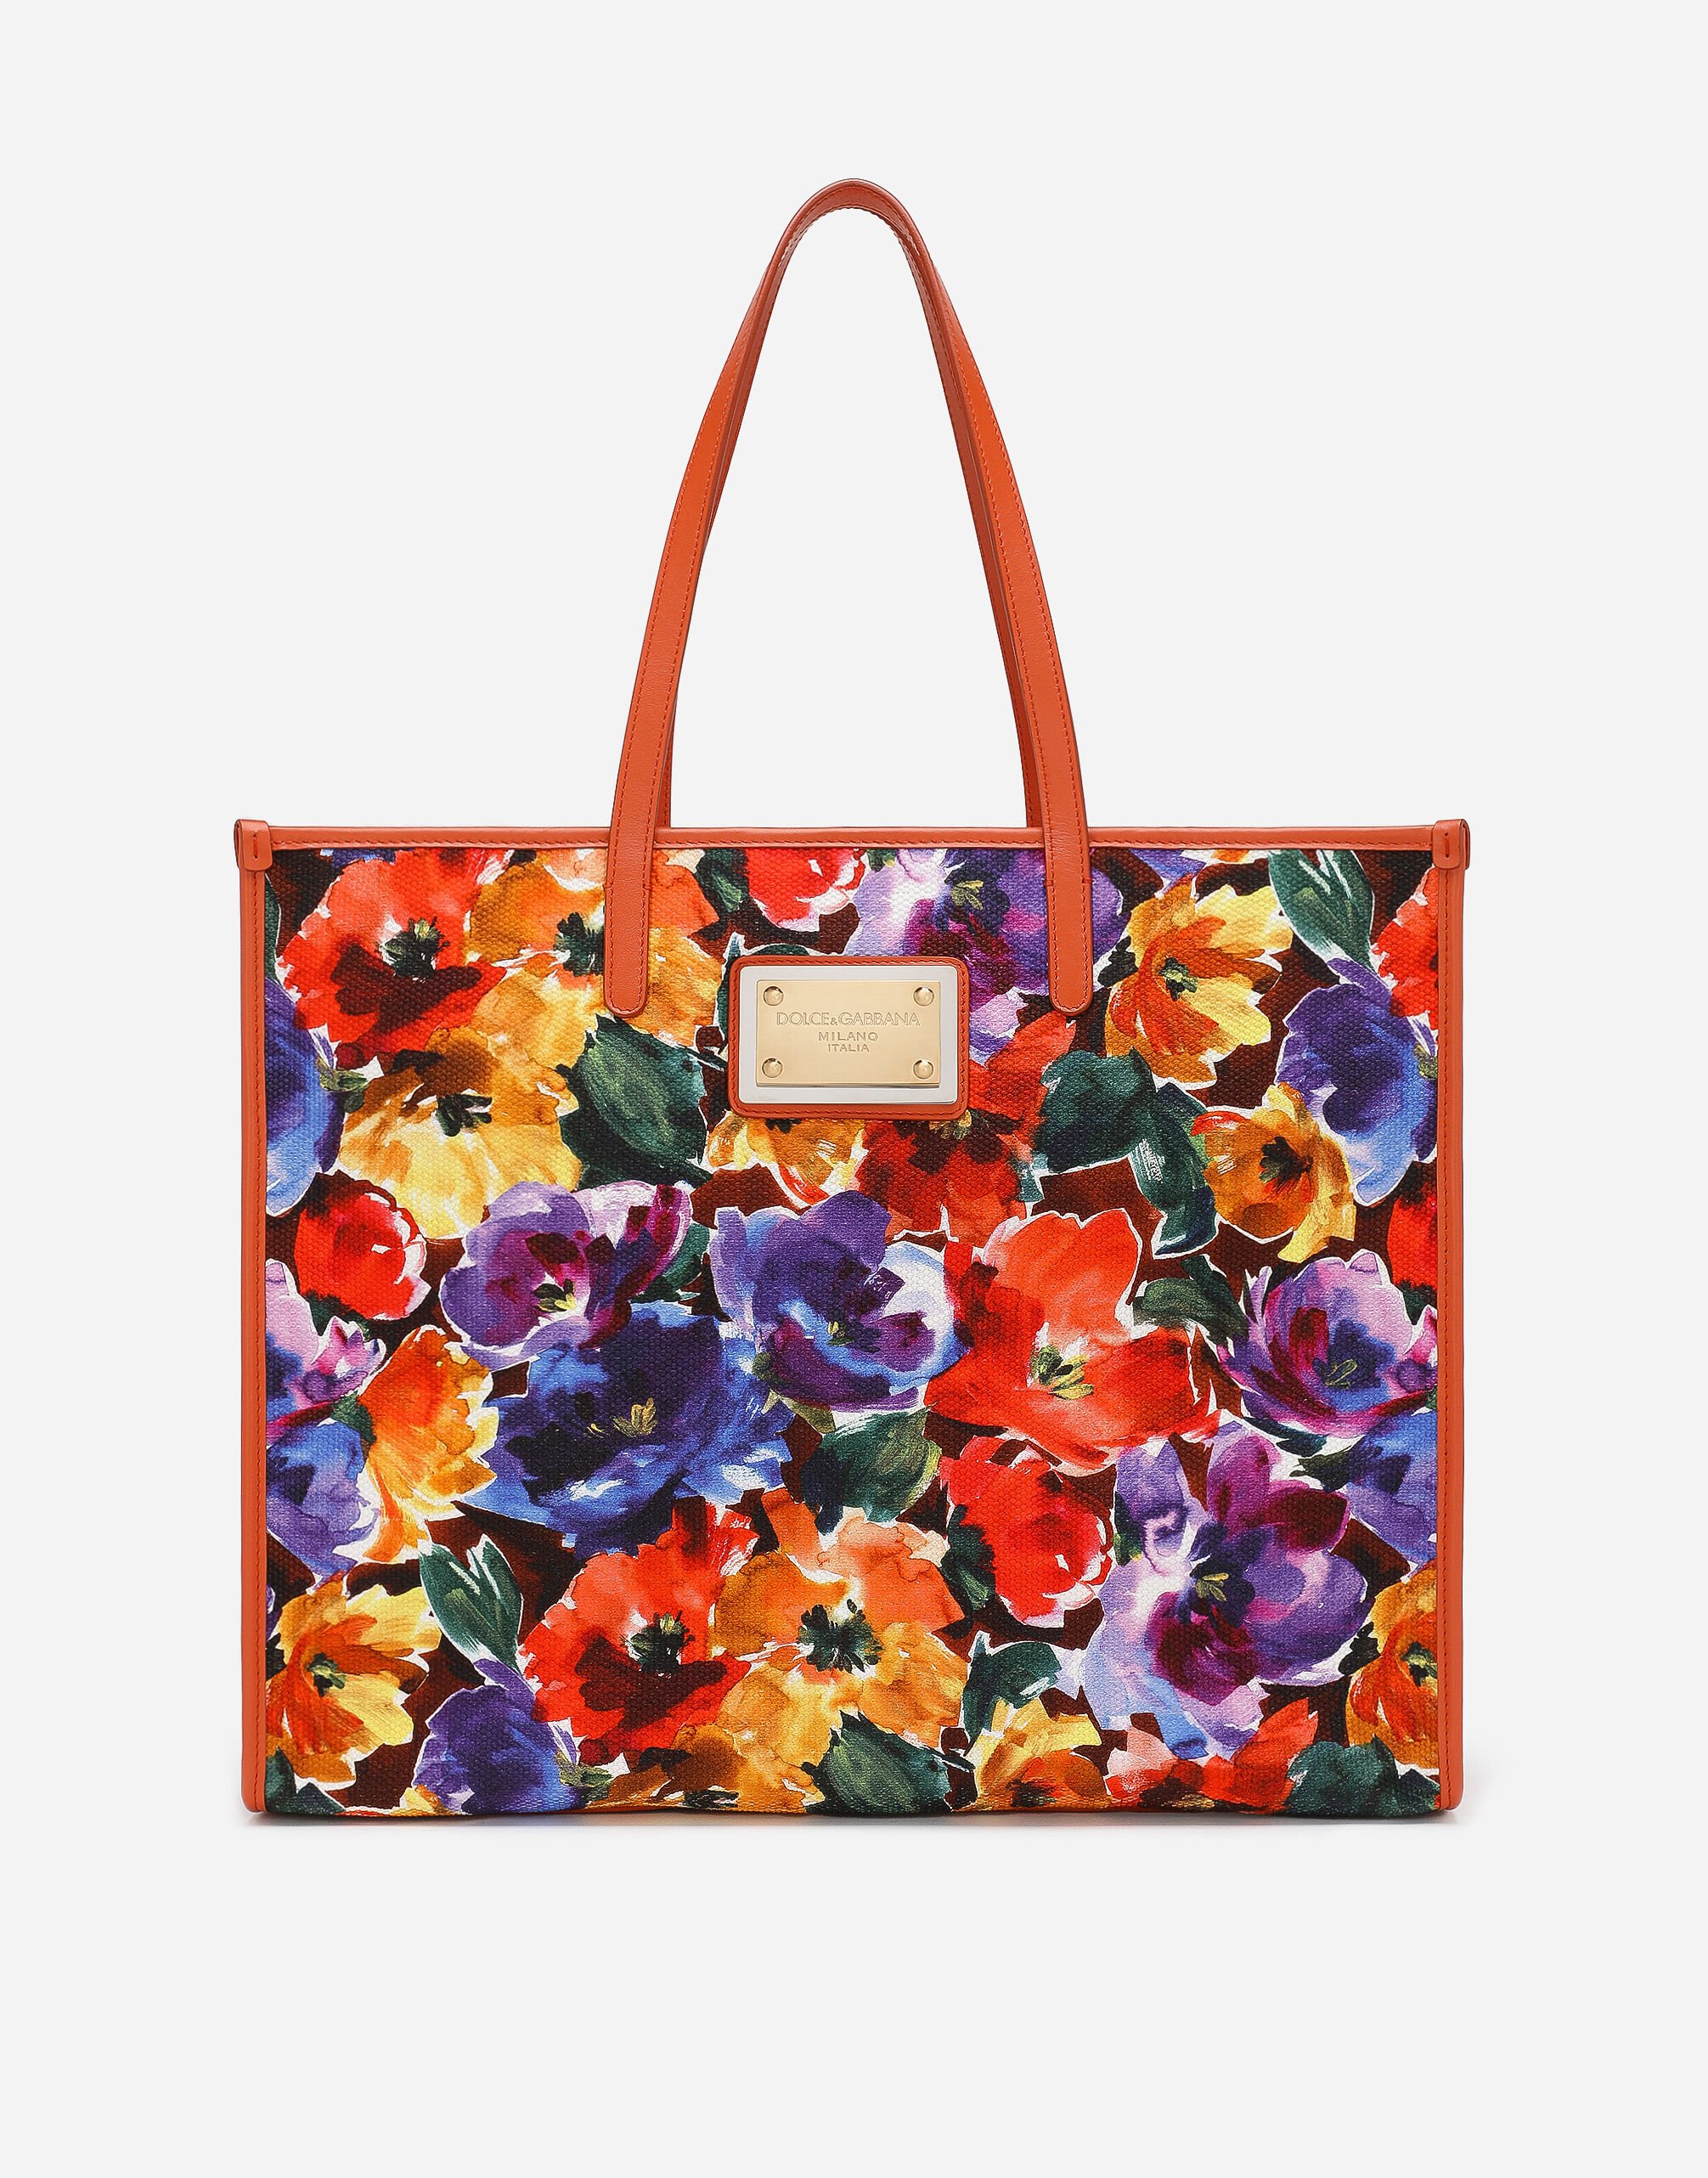 Dolce & Gabbana حقيبة تسوق كبيرة متعدد الألوان BB7270AR355